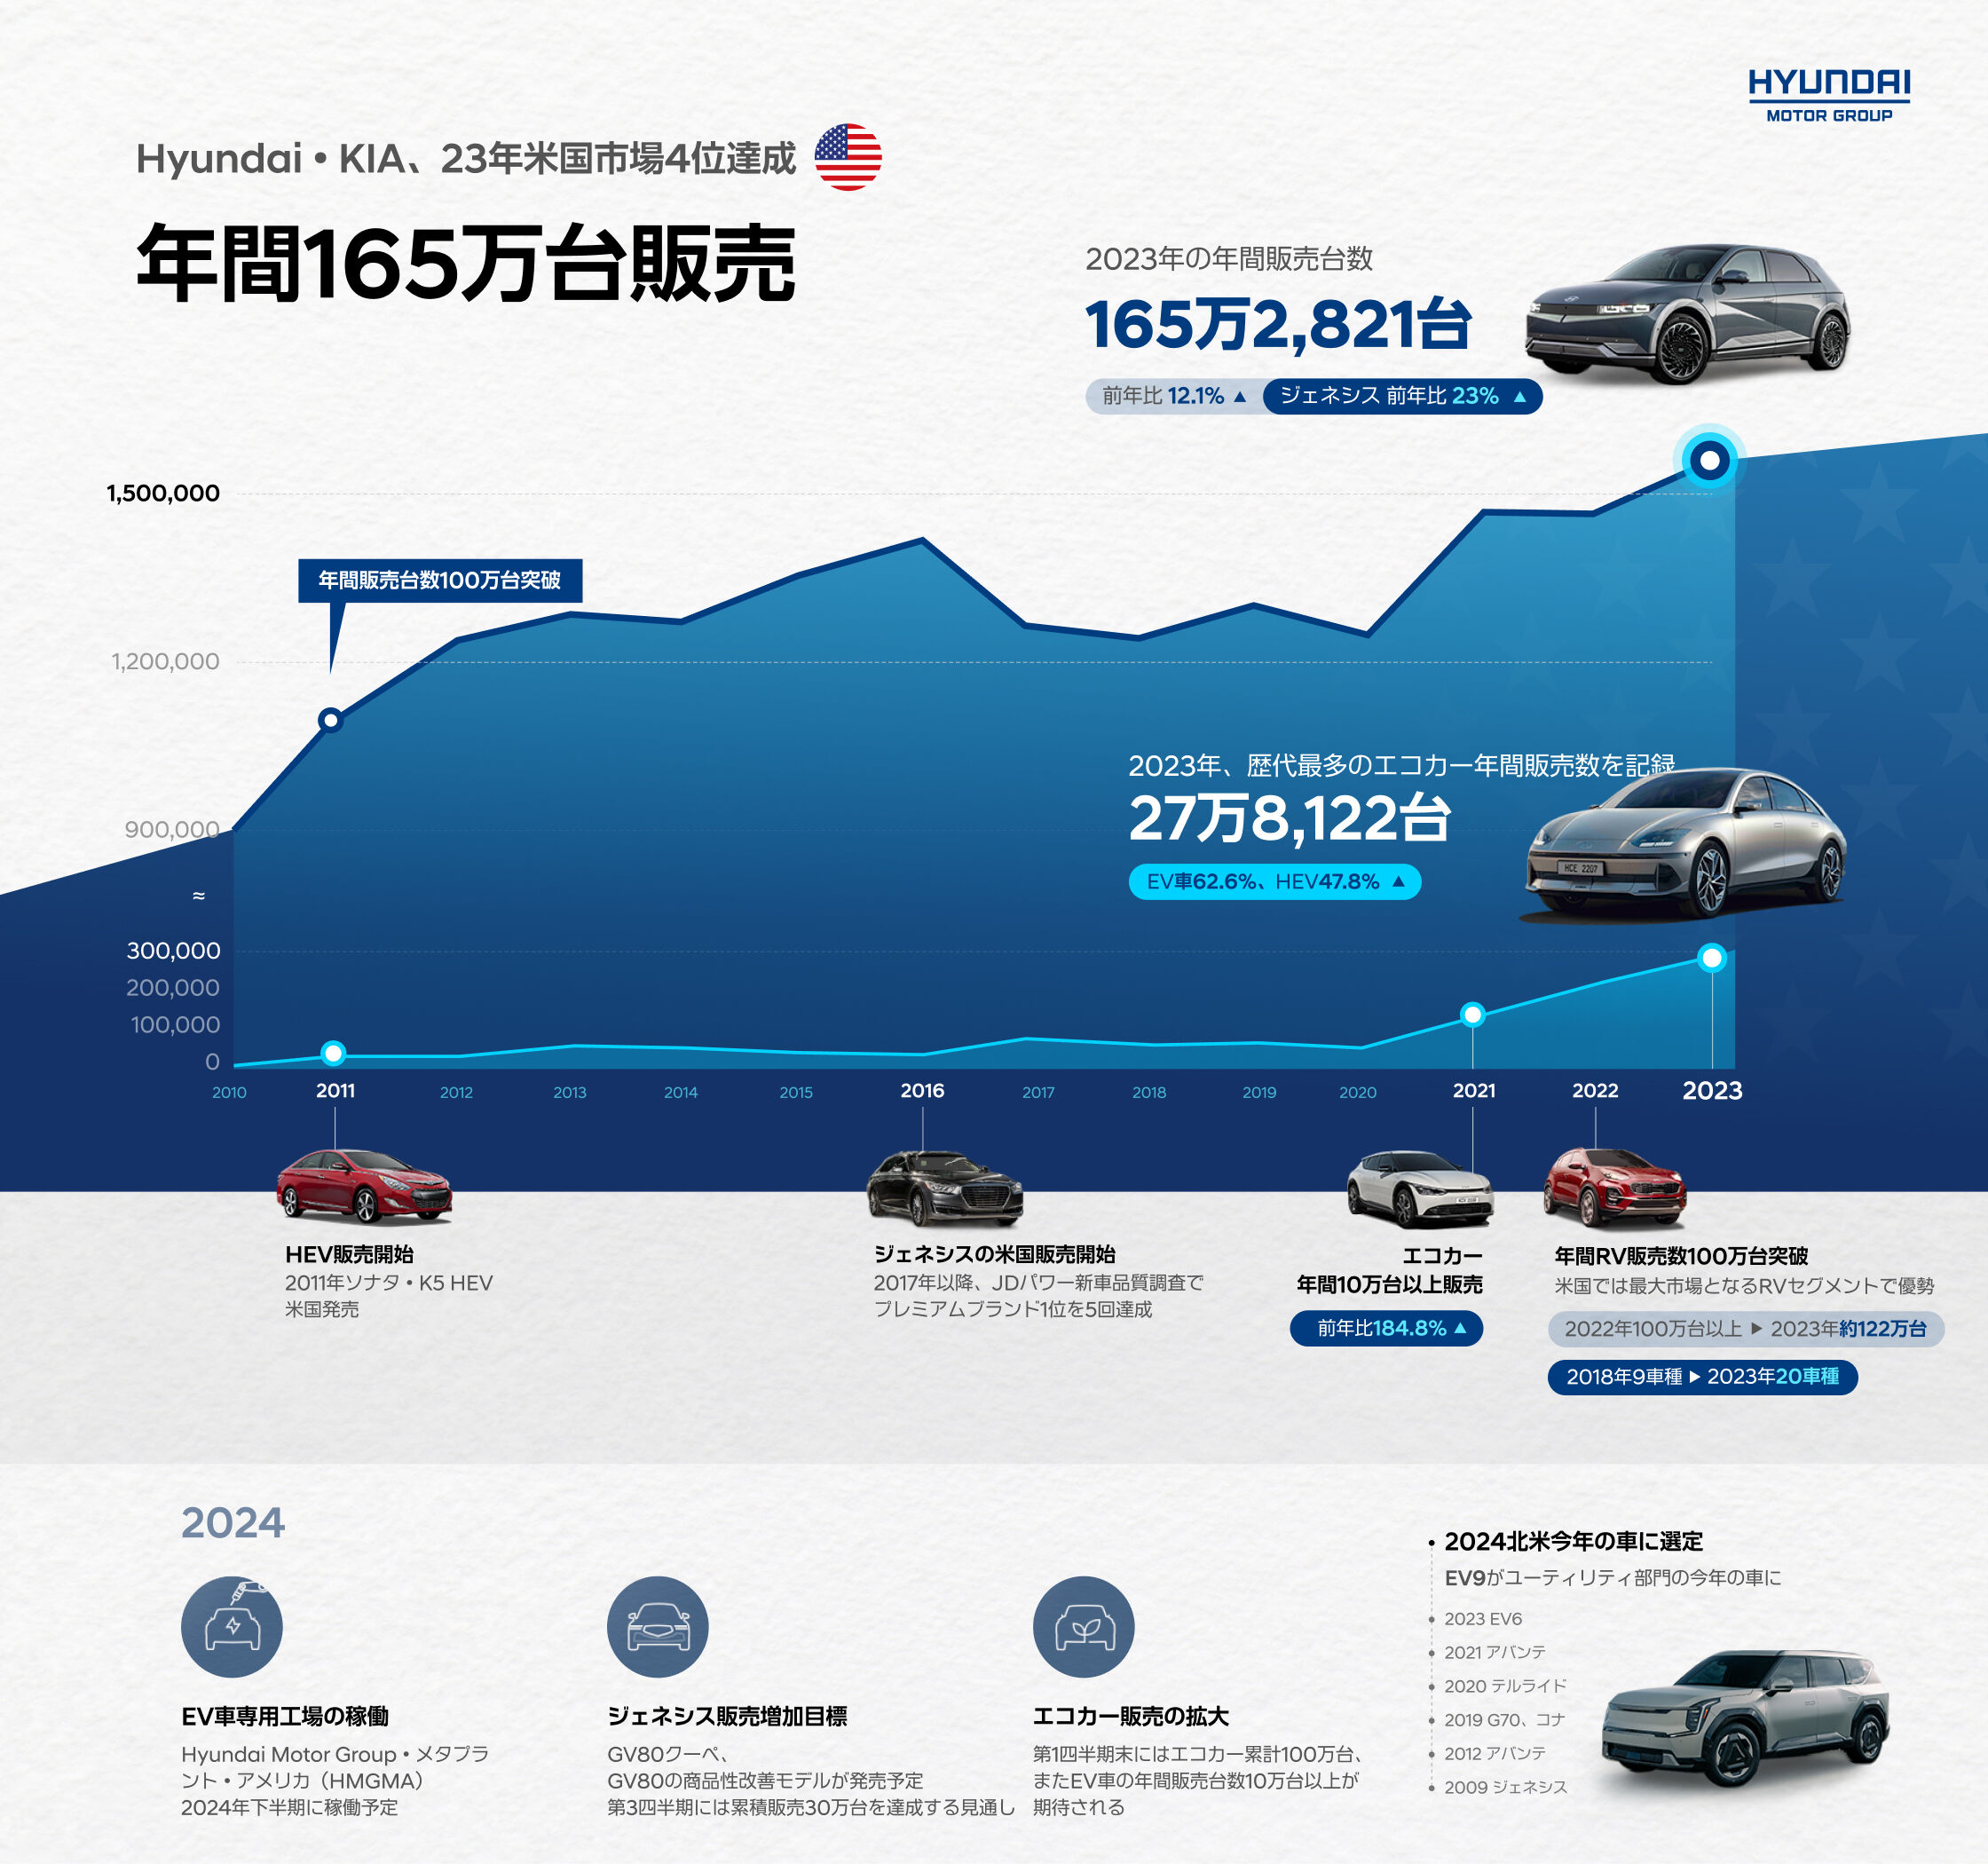 ２０２３年 Hyundai Motor Groupの米国での販売量及び販売順位を表す図  -  ヒョンデモビリティジャパン ブランドストーリー